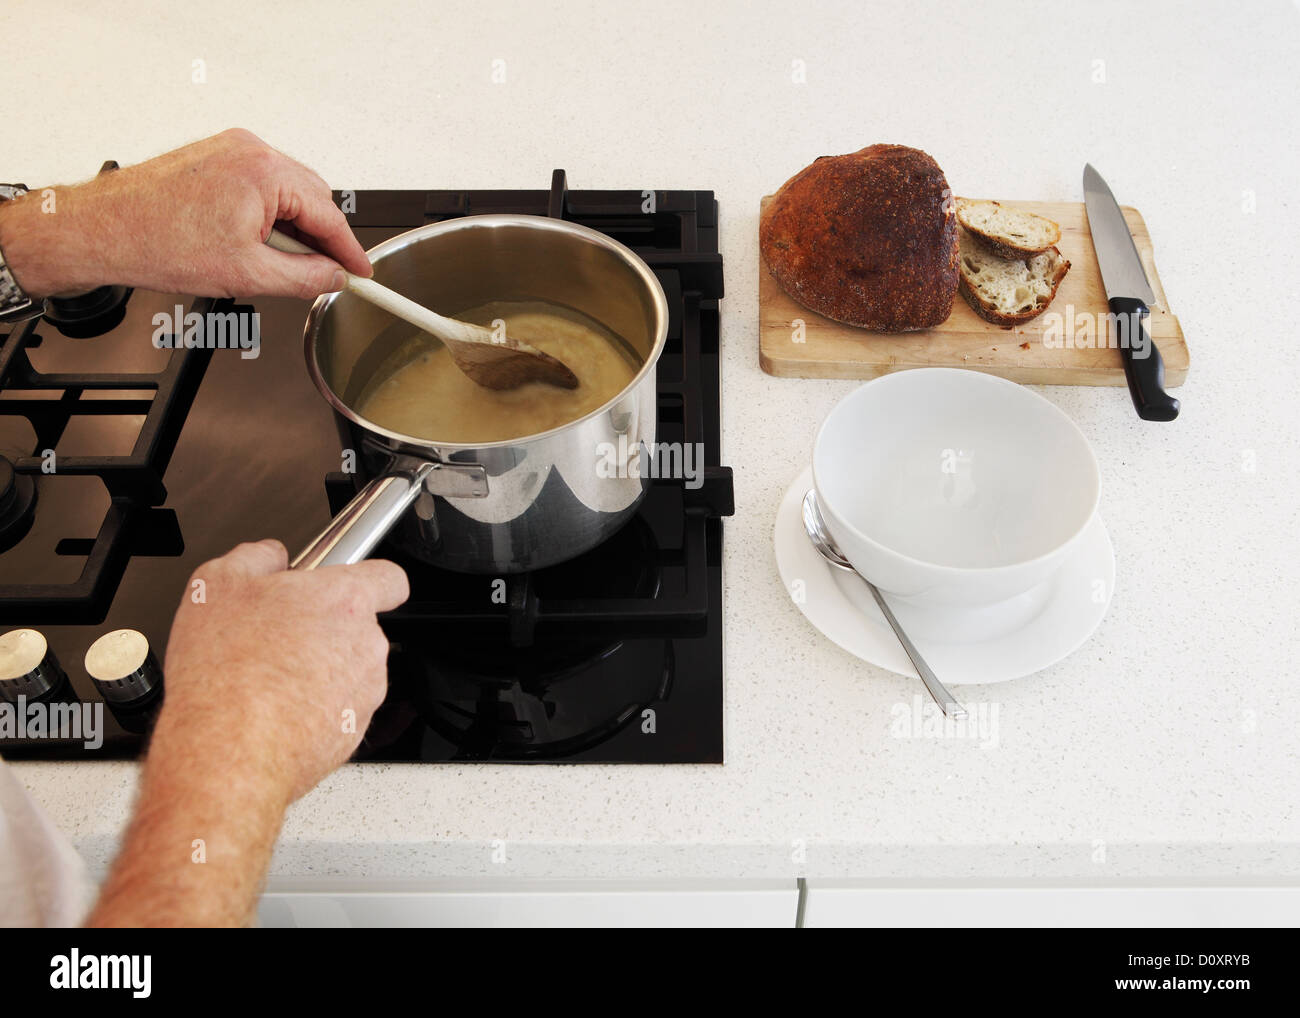 L'homme en remuant la casserole de soupe sur une plaque de cuisson Banque D'Images